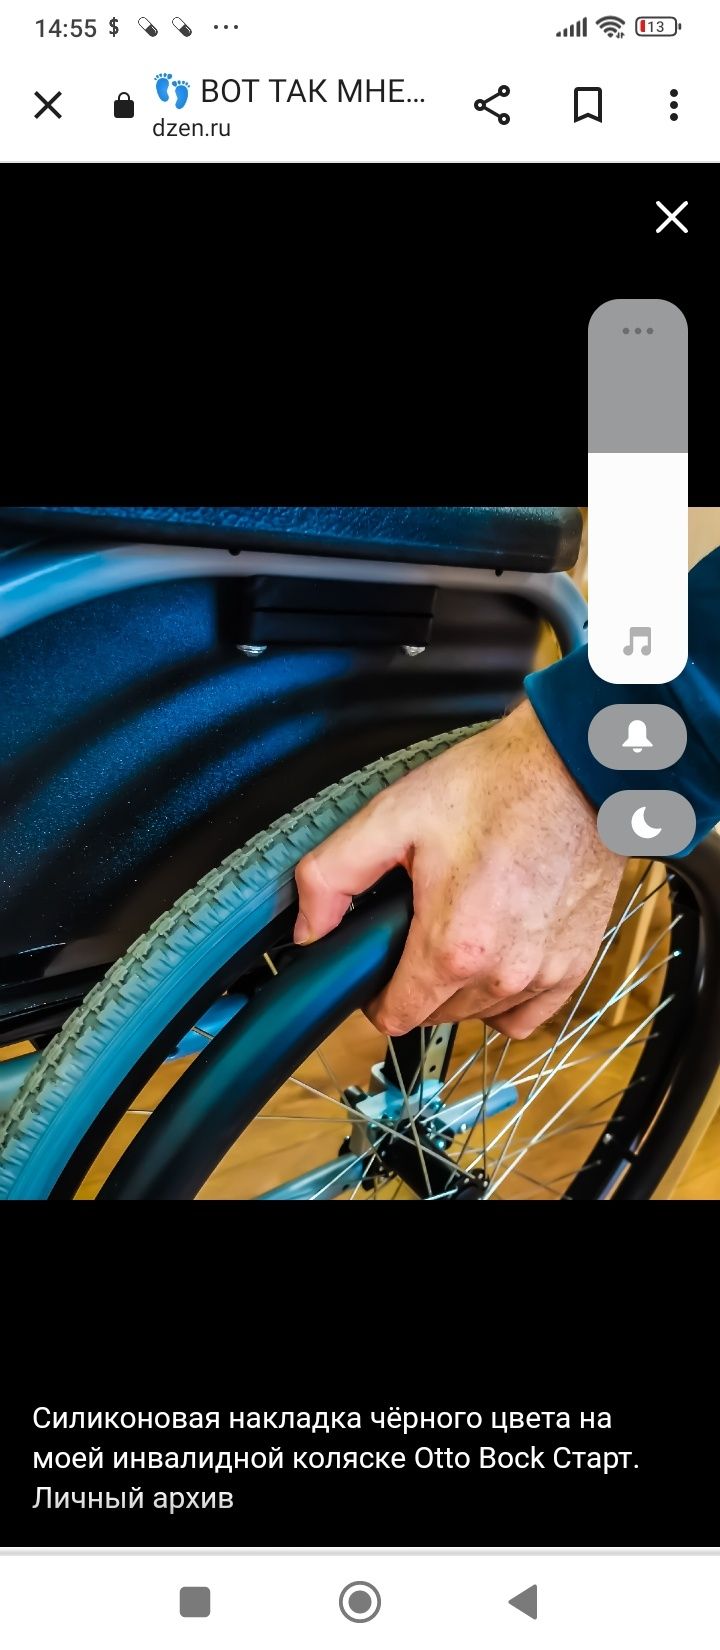 Накладки на кольца для инвалидной каляске